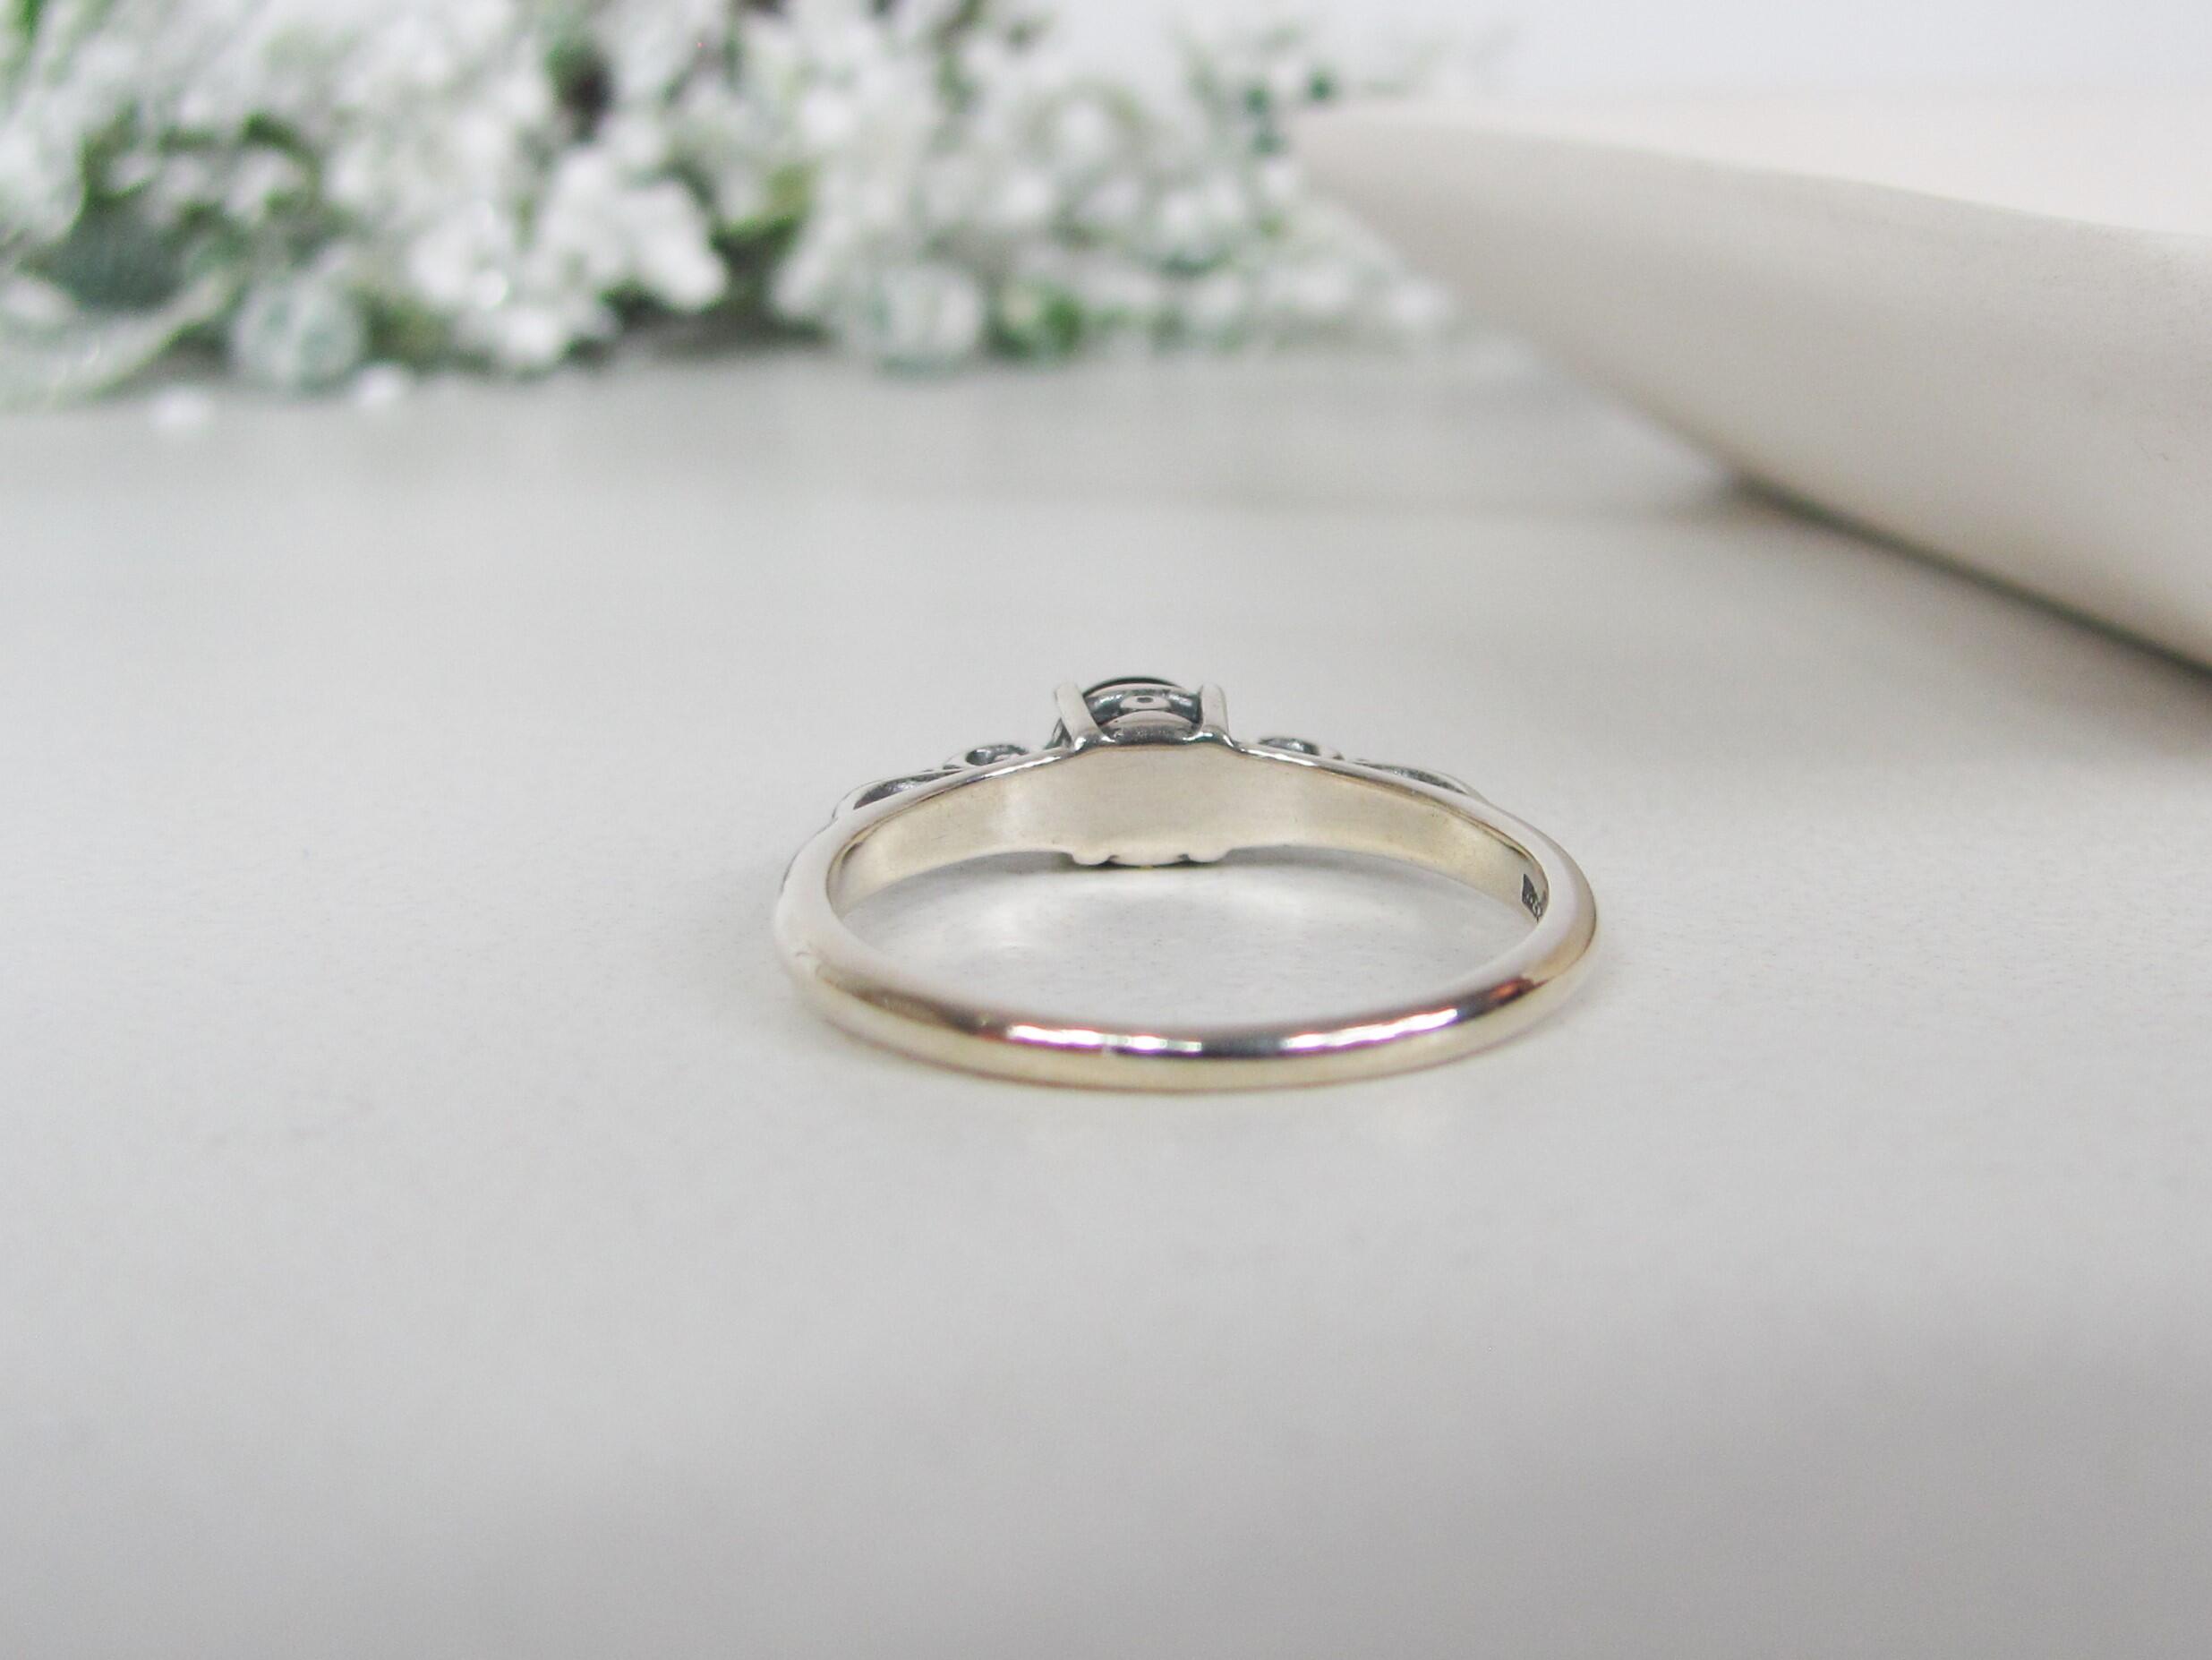 Garnet Birthstone Ring in Sterling Silver